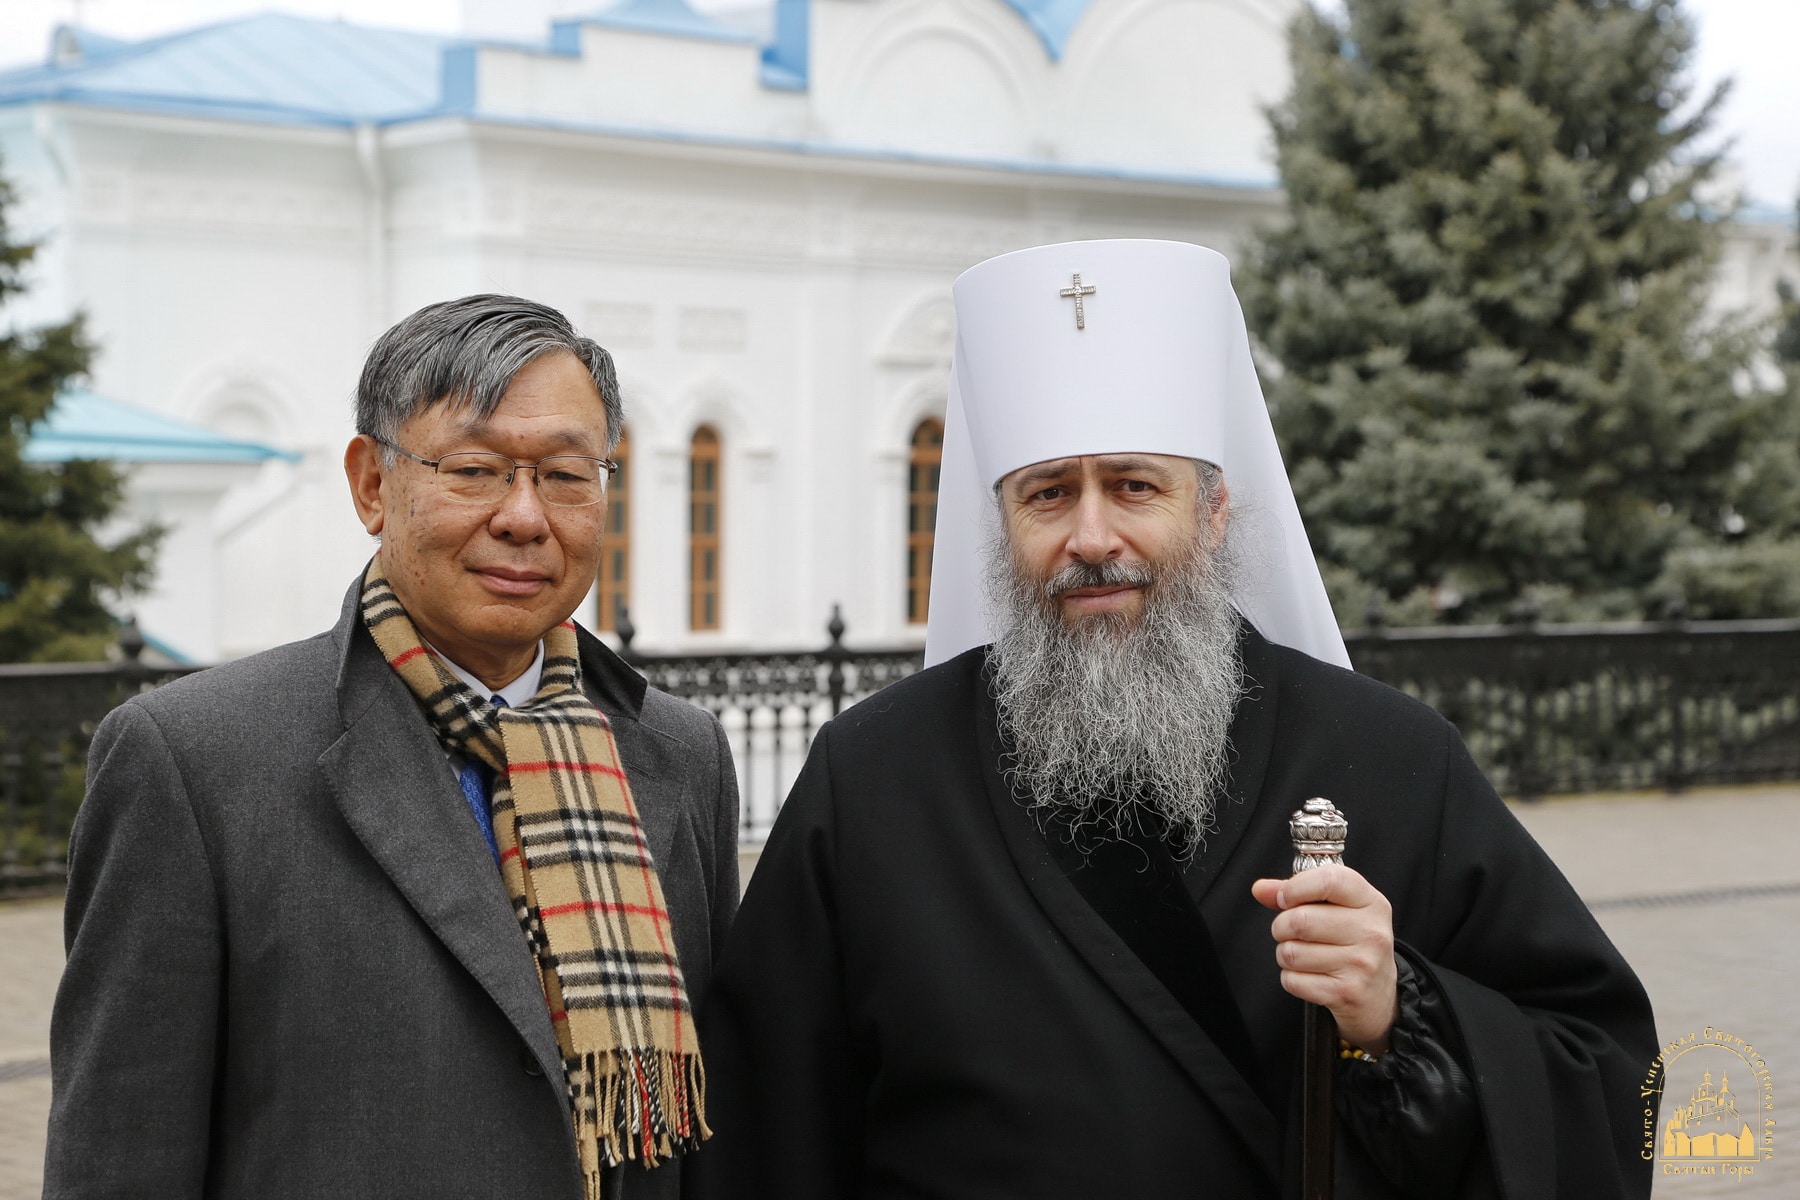 Le jour de la fête de saint Nicolas du Japon, l’ambassadeur japonais à Kiev a rendu visite à la Laure de Sviatogorsk, en Ukraine